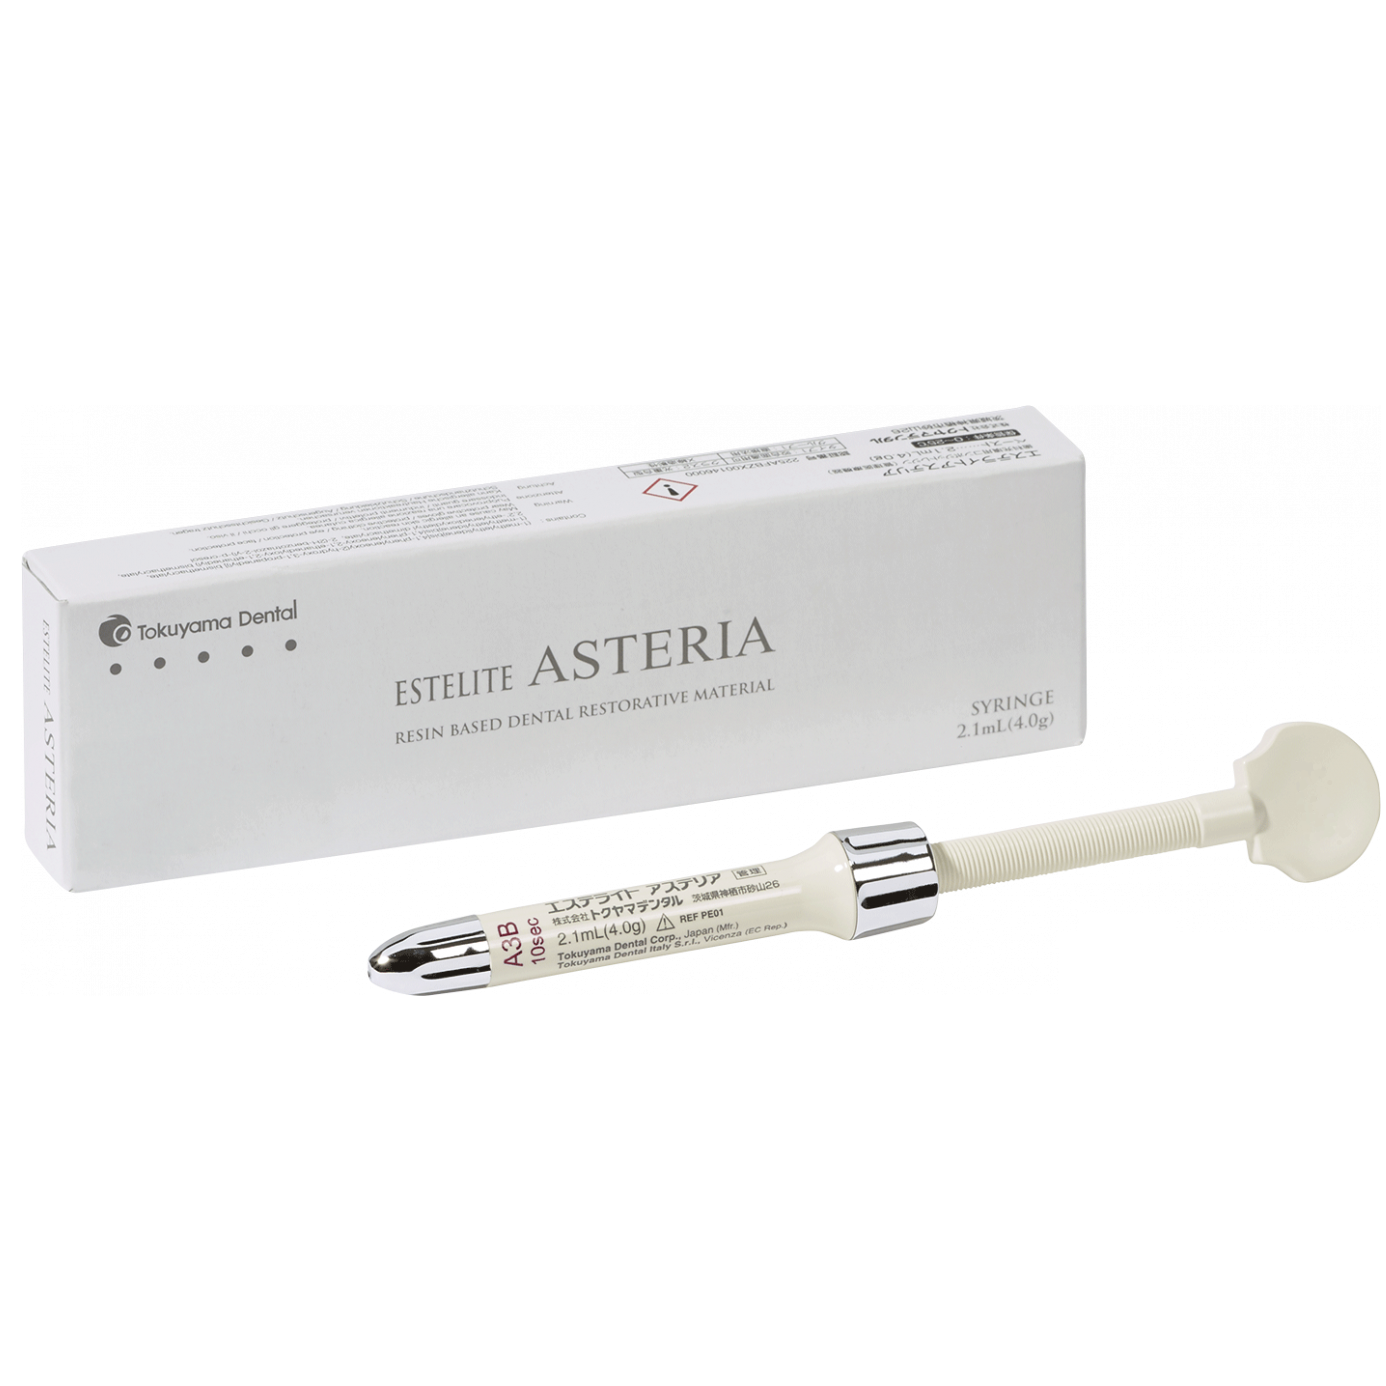 Купить Эстелайт Астерия Estelite Asteria Syringe YE супра-нано композит для эстетической реставрации 4,0г (Tokuyama)